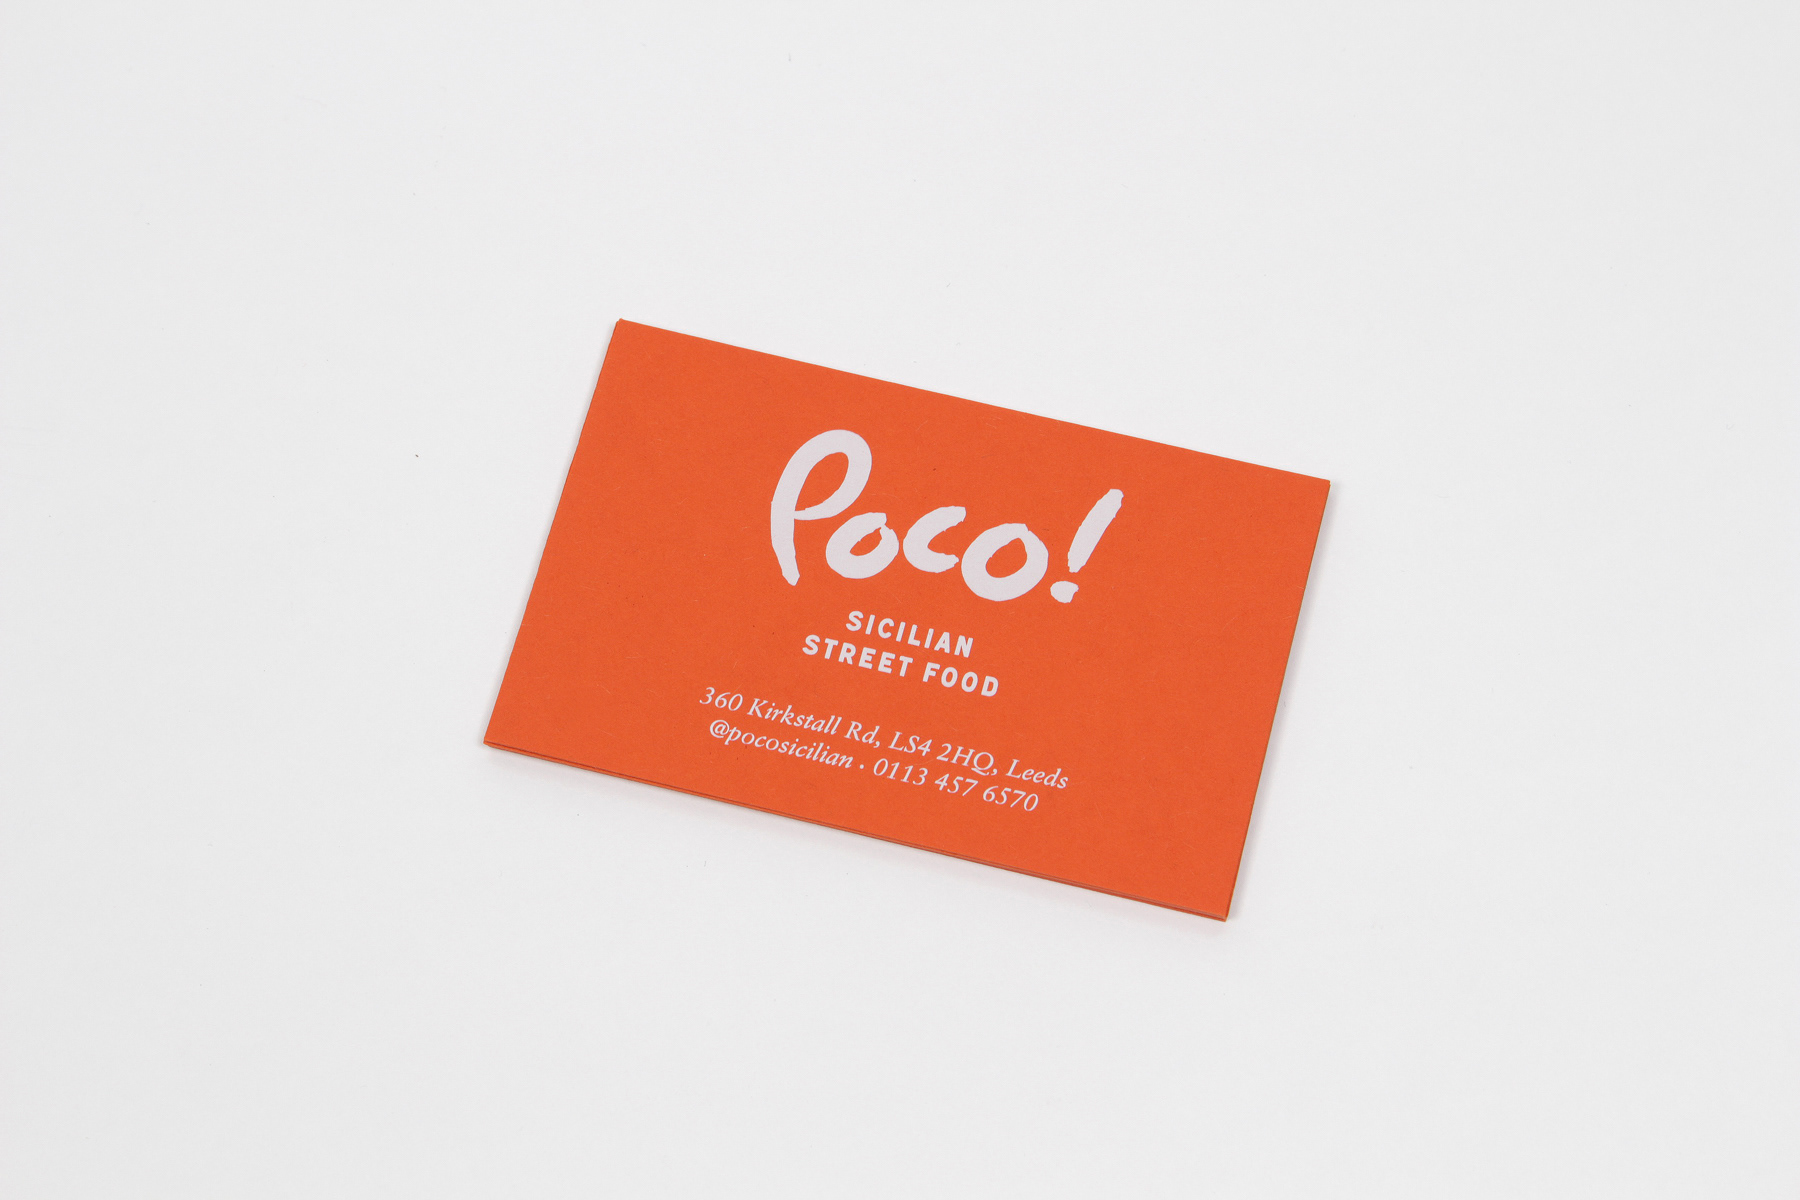 Poco!美食餐厅品牌VI设计